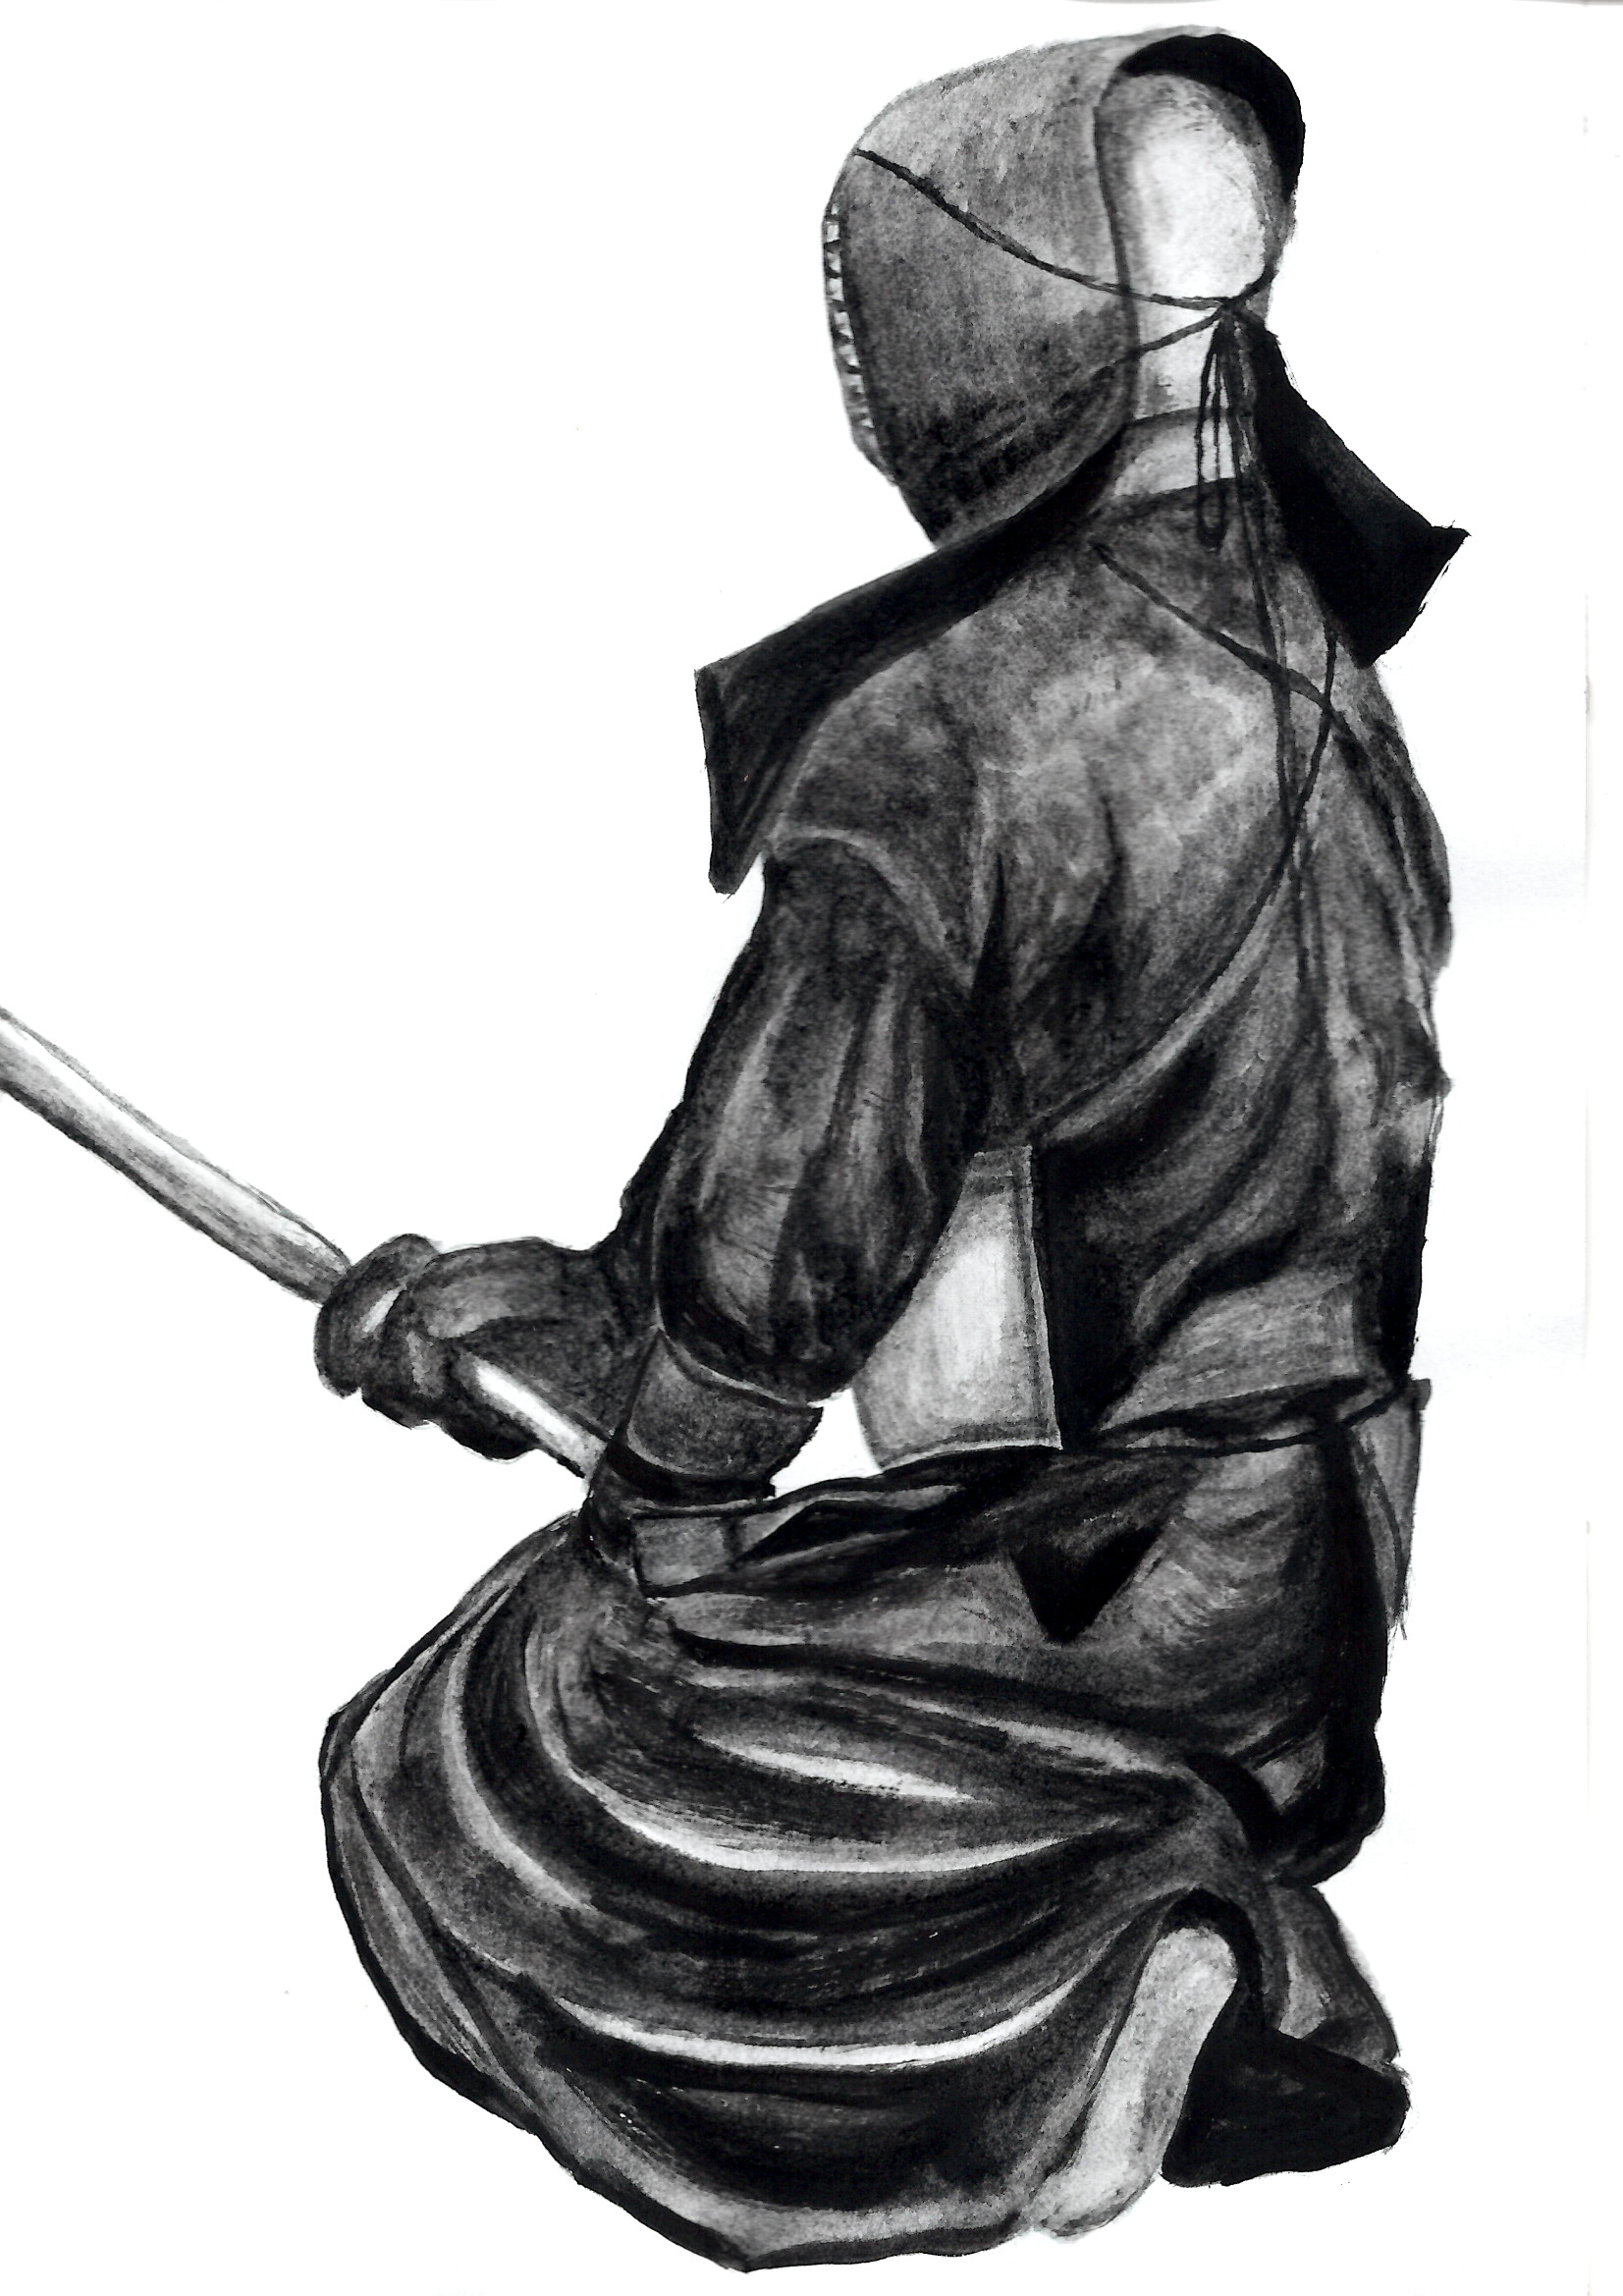 剣道イラスト成長日記 Oozuyan 動きのない絵ですが 後ろ姿からいろいろ想像できればと思ってます 前二つとられてからの中堅も まさにこの状況ですね Twitter